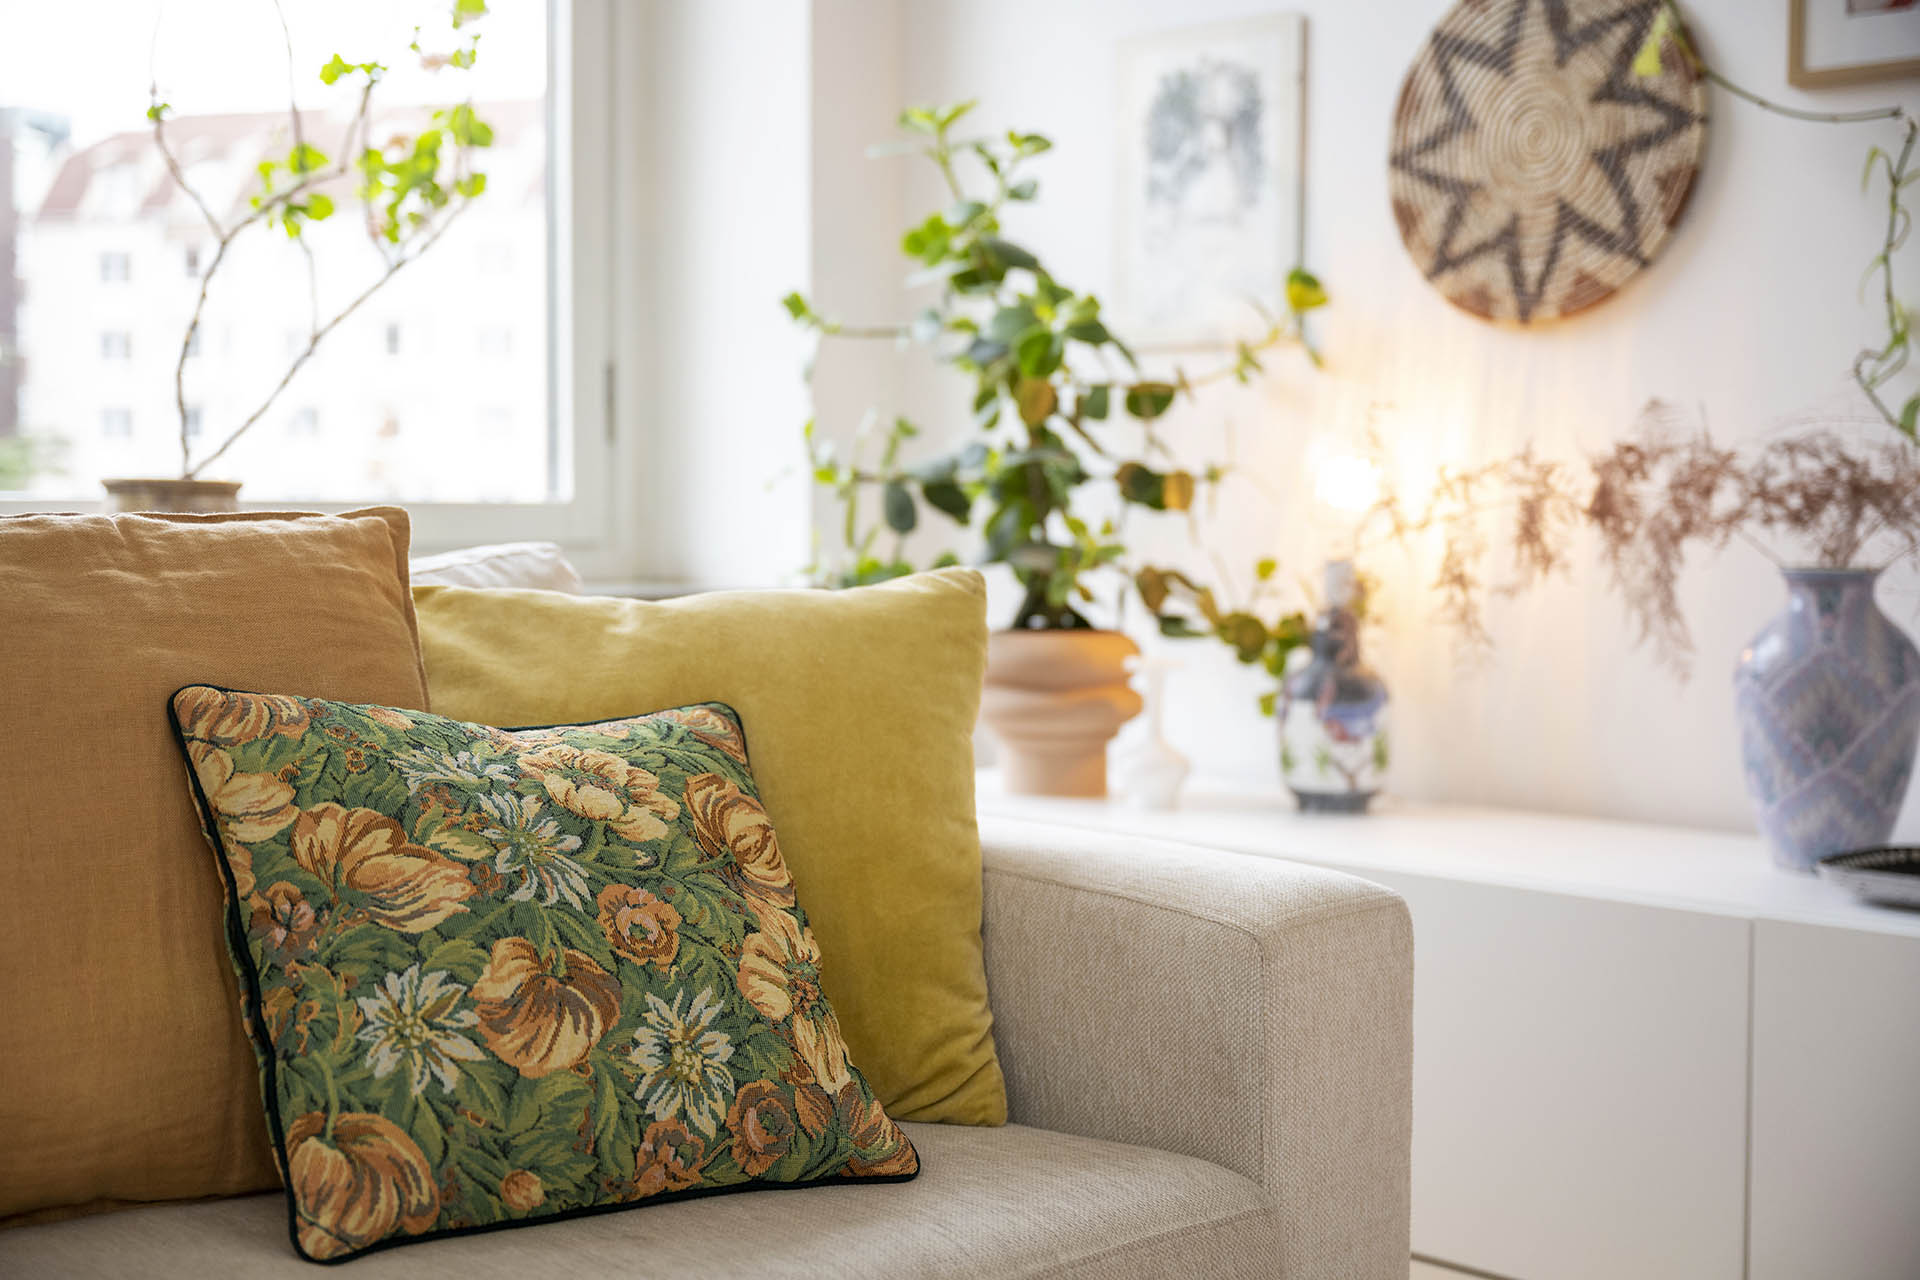 En ljus beige soffa med en blommig och gula kuddar. Bakom syns en grön krukväxt och en lampa som lyser